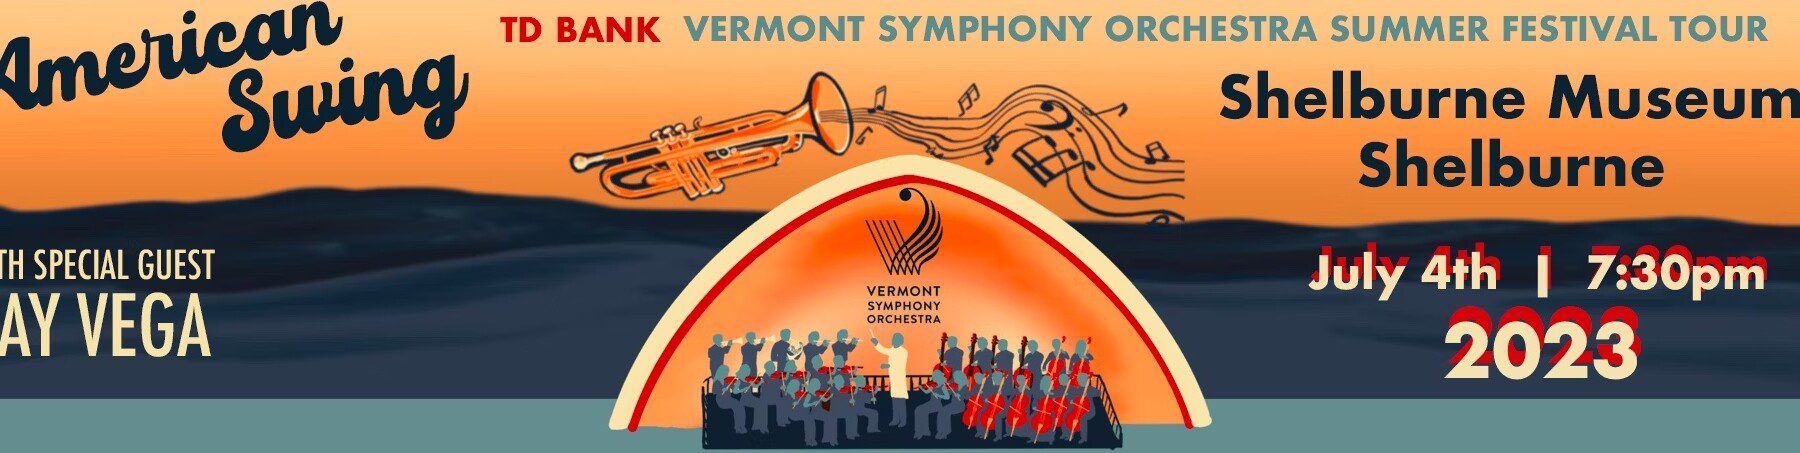 Vermont Symphony Orchestra Summer Festival Tour